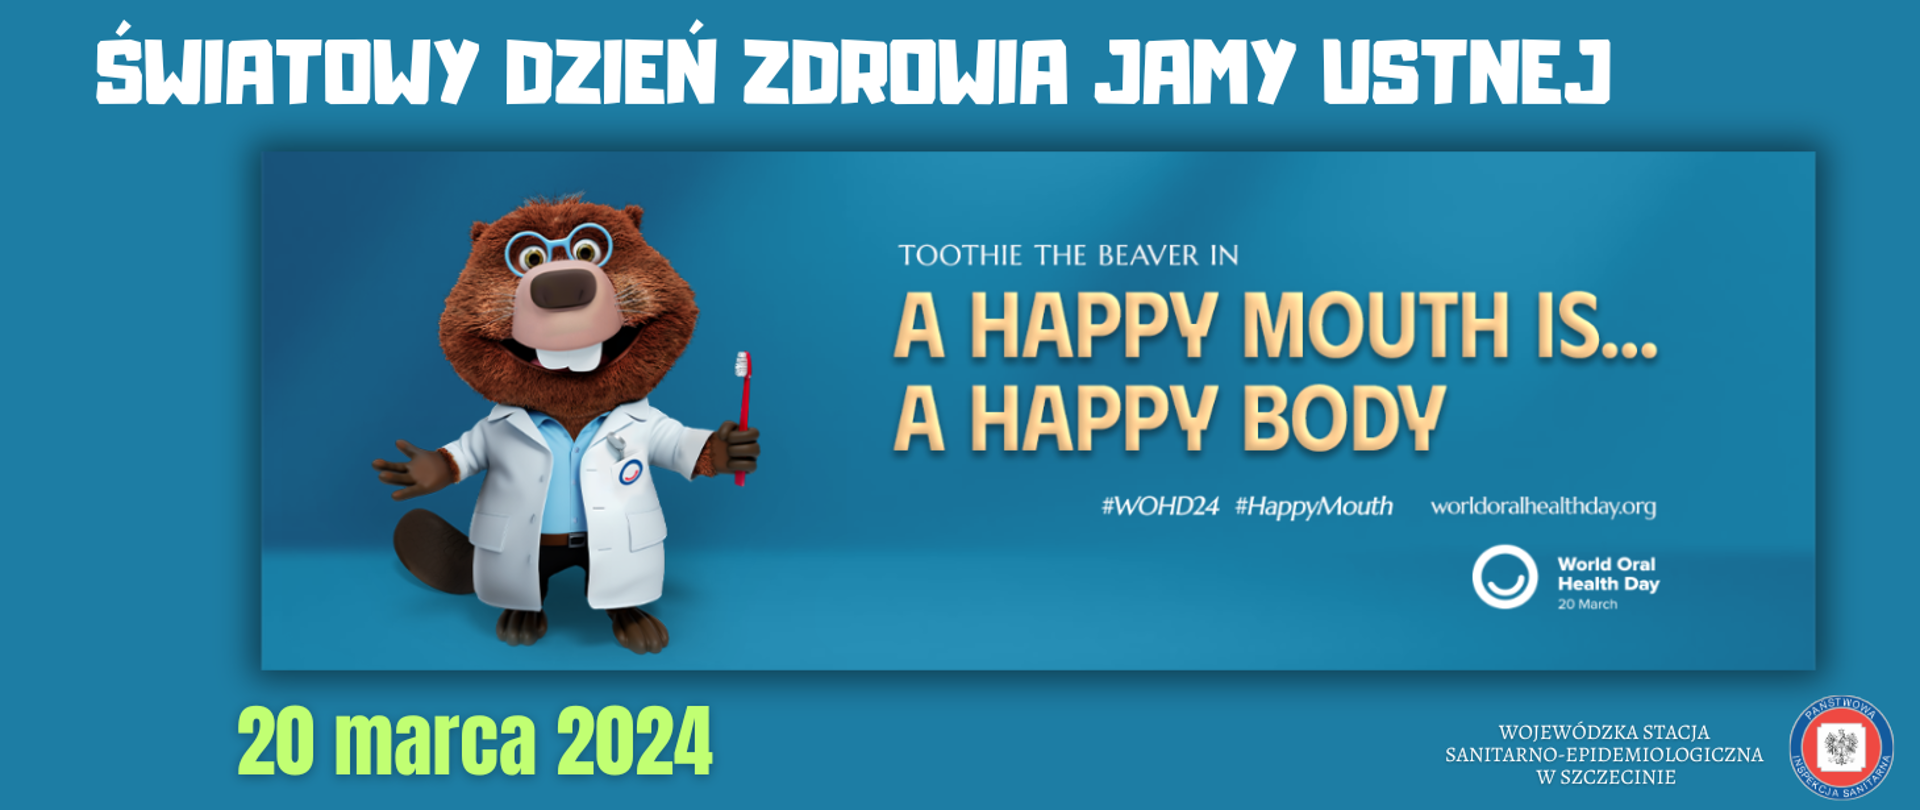 Grafika przedstawia hasło obchodów Światowego Dnia Zdrowia Jamy Ustnej oraz postać bobra o imieniu Toothie.